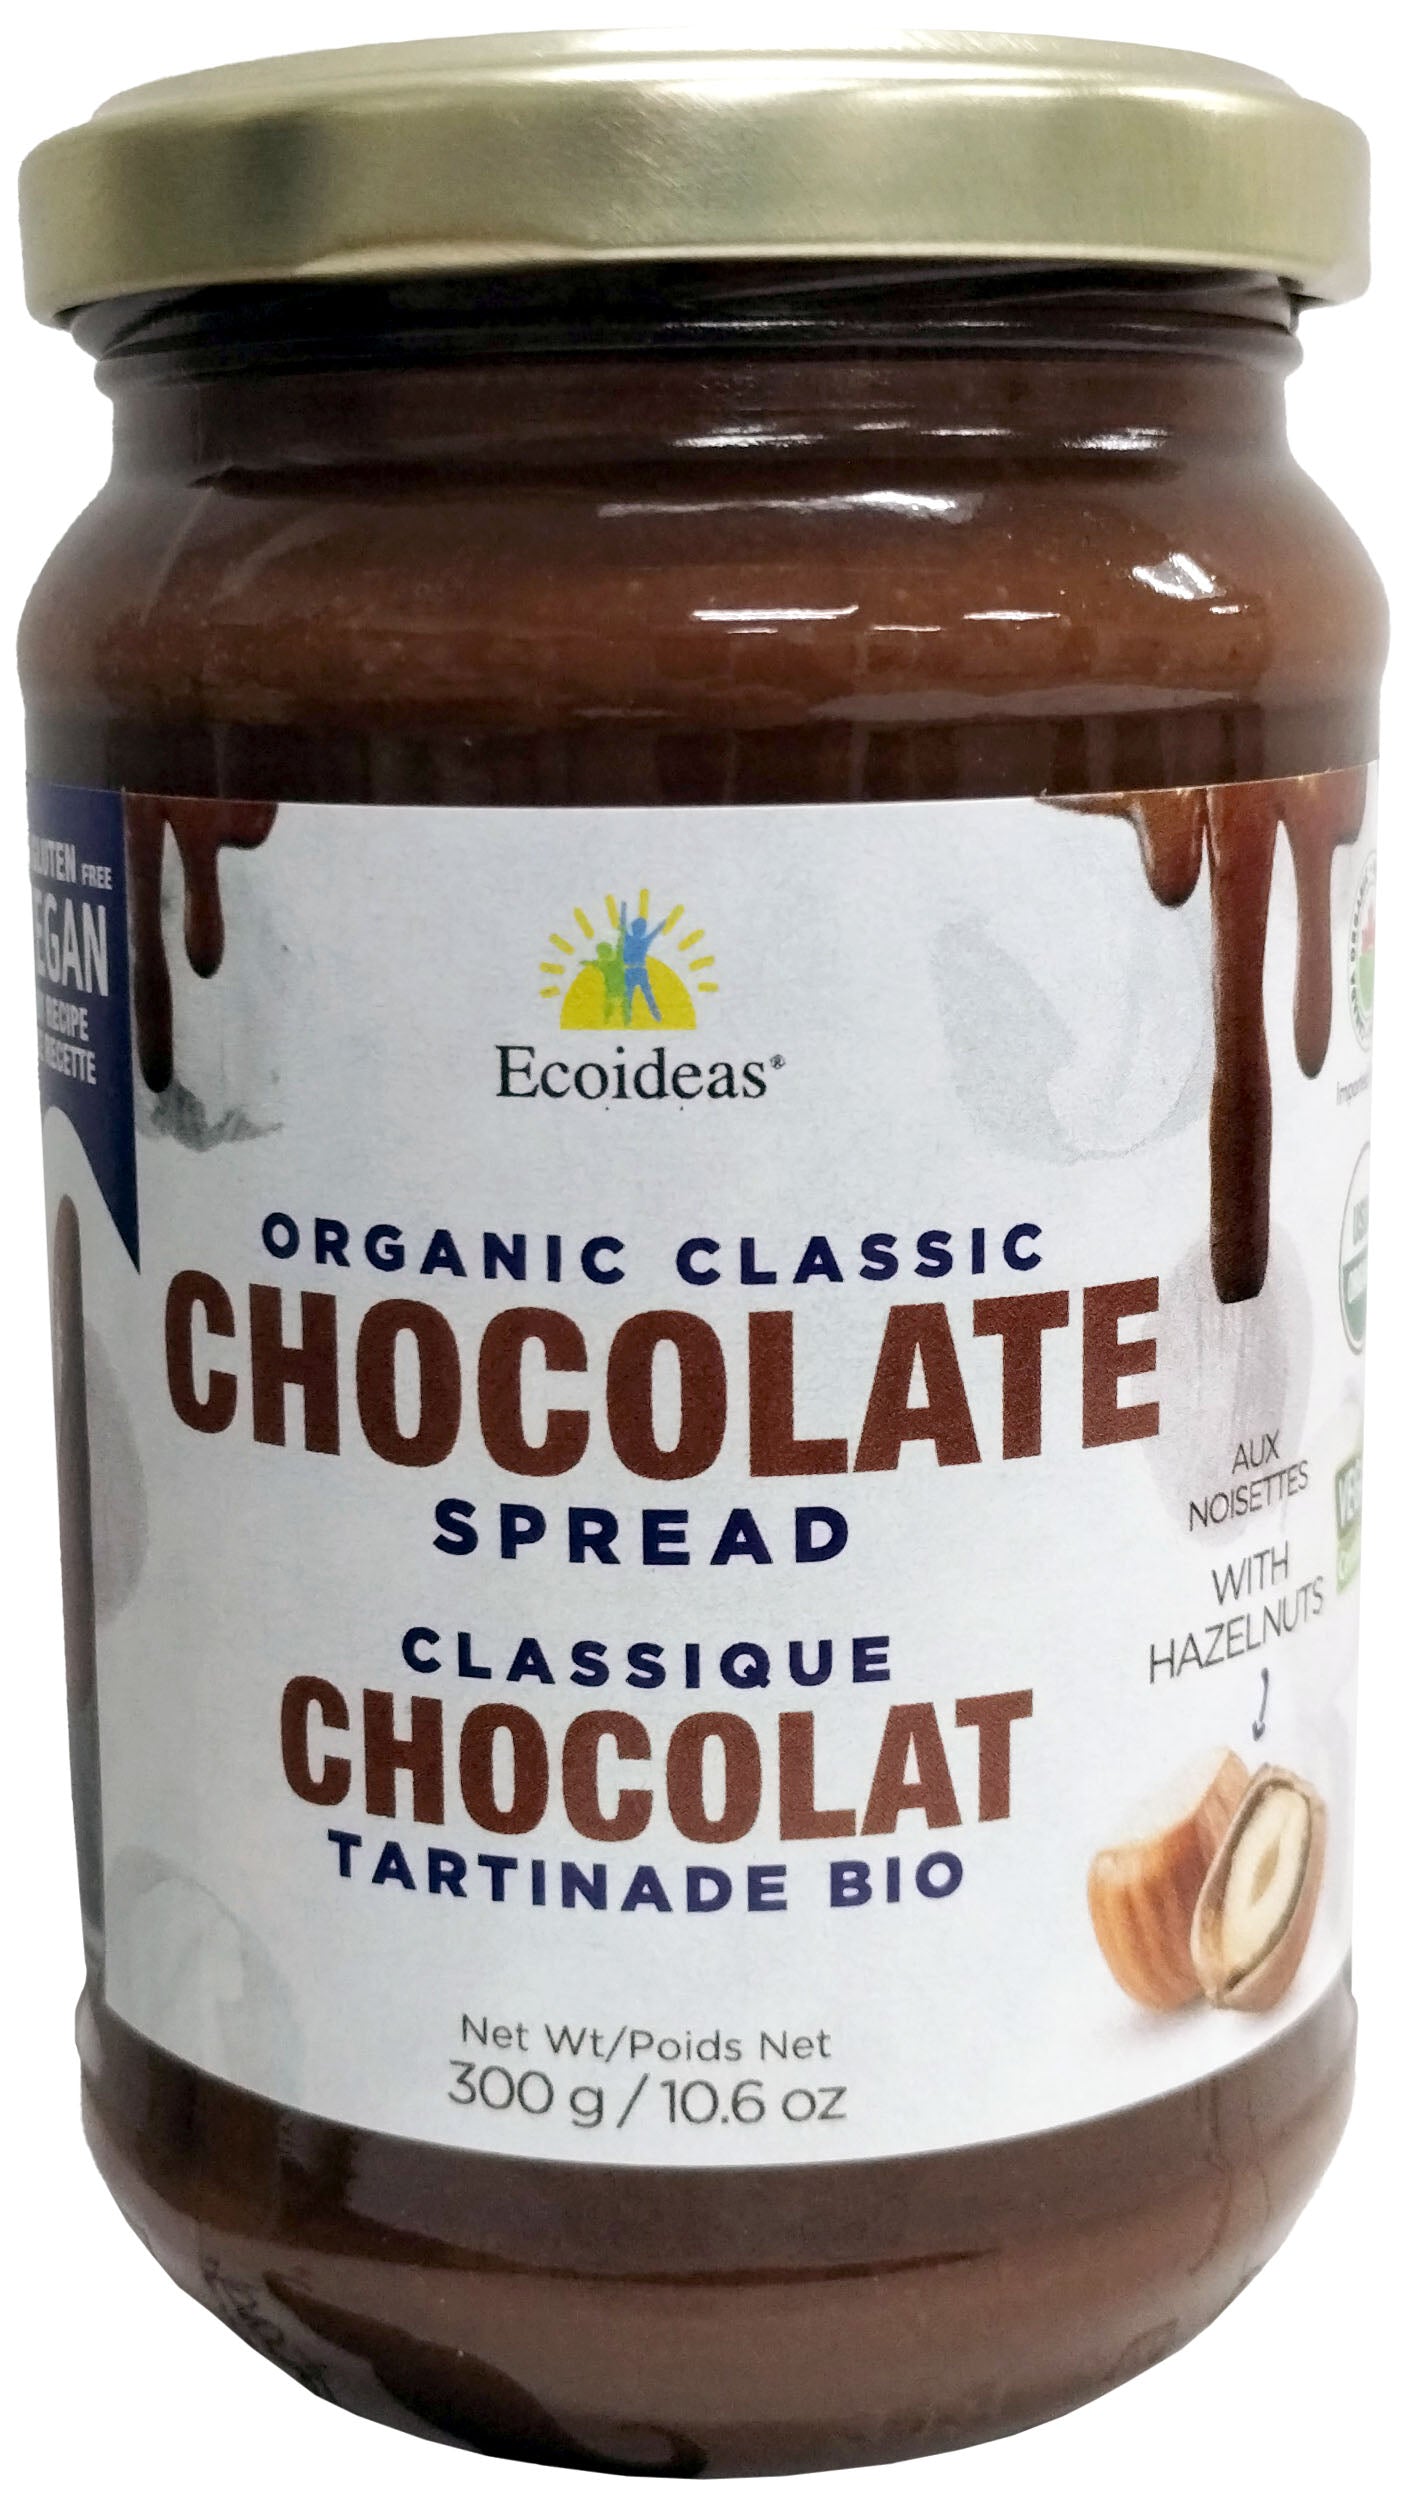 Tartinade chocolat classique bio 300g